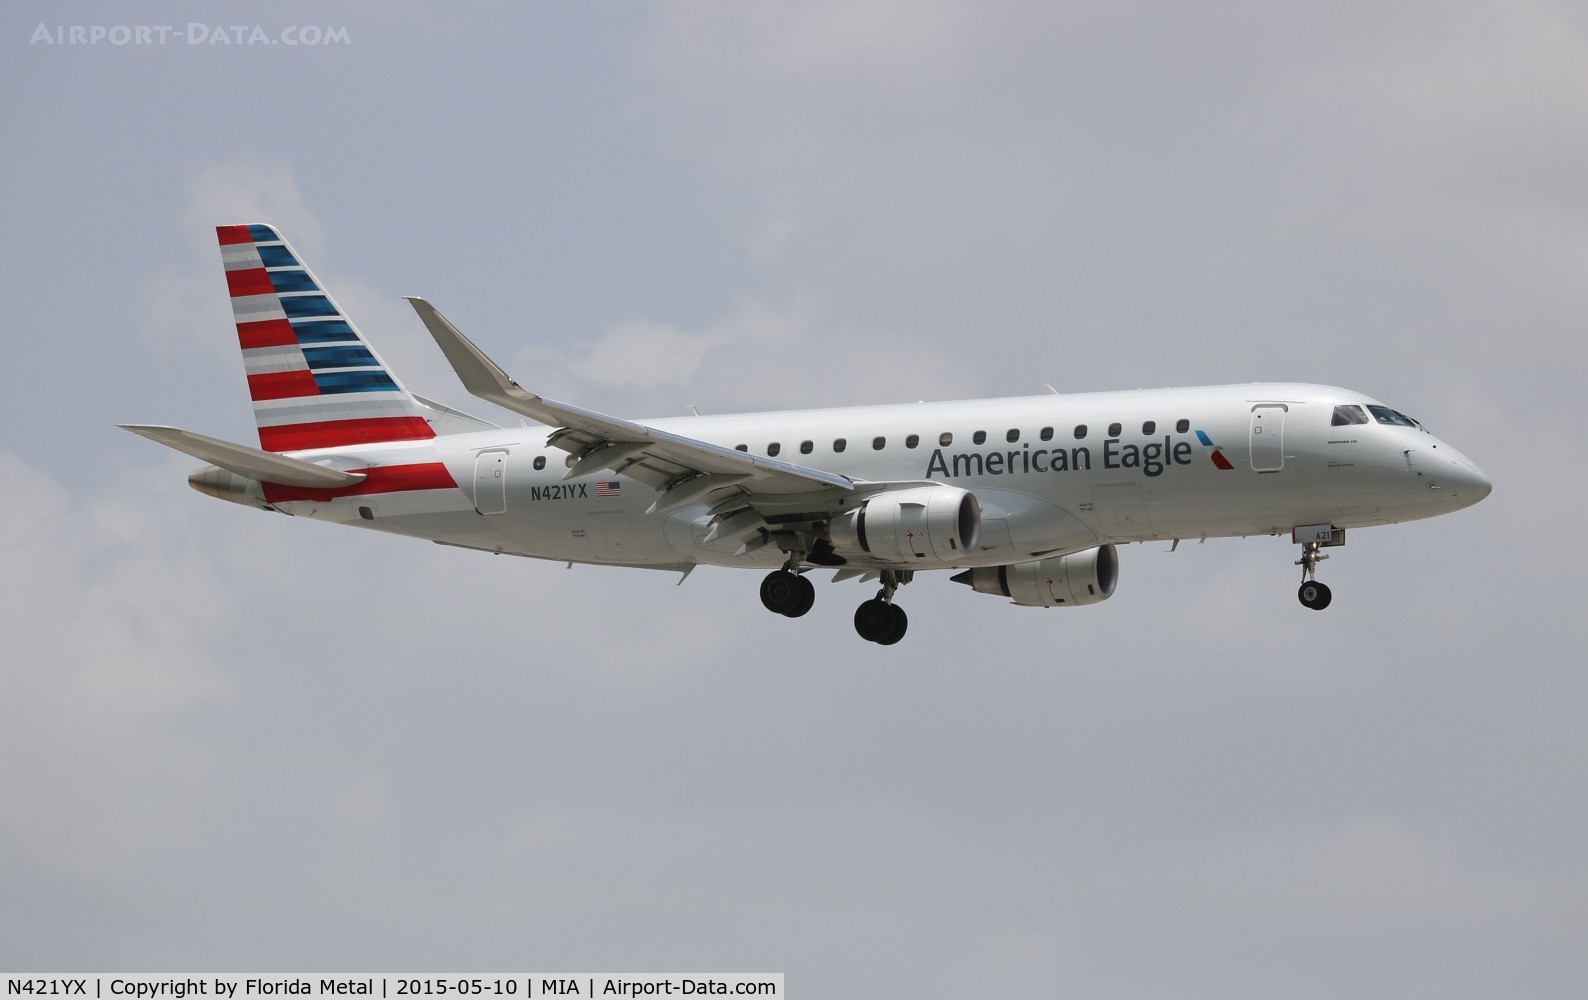 N421YX, 2014 Embraer 175LR (ERJ-170-200LR) C/N 17000386, American Eagle